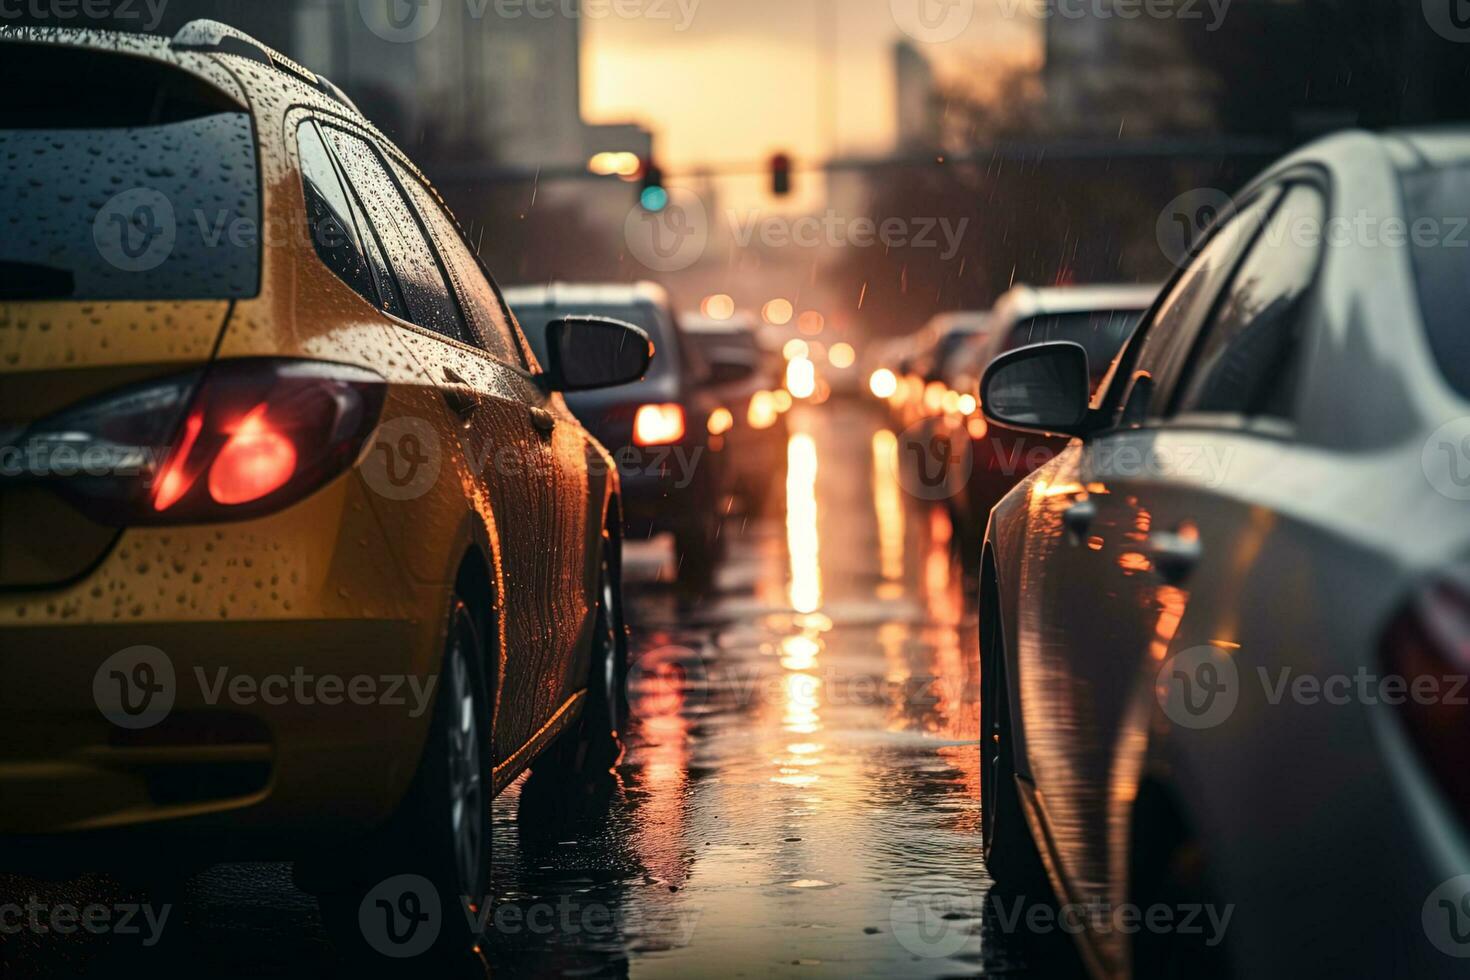 Images Gratuites : lumière, rue, voiture, nuit, pluie, véhicule,  Pare-brise, Feu, obscurité, éclairage, 2016, 366, Arrêté dans le trafic,  capture d'écran 3841x2290 - - 283086 - Banque d image gratuite - PxHere